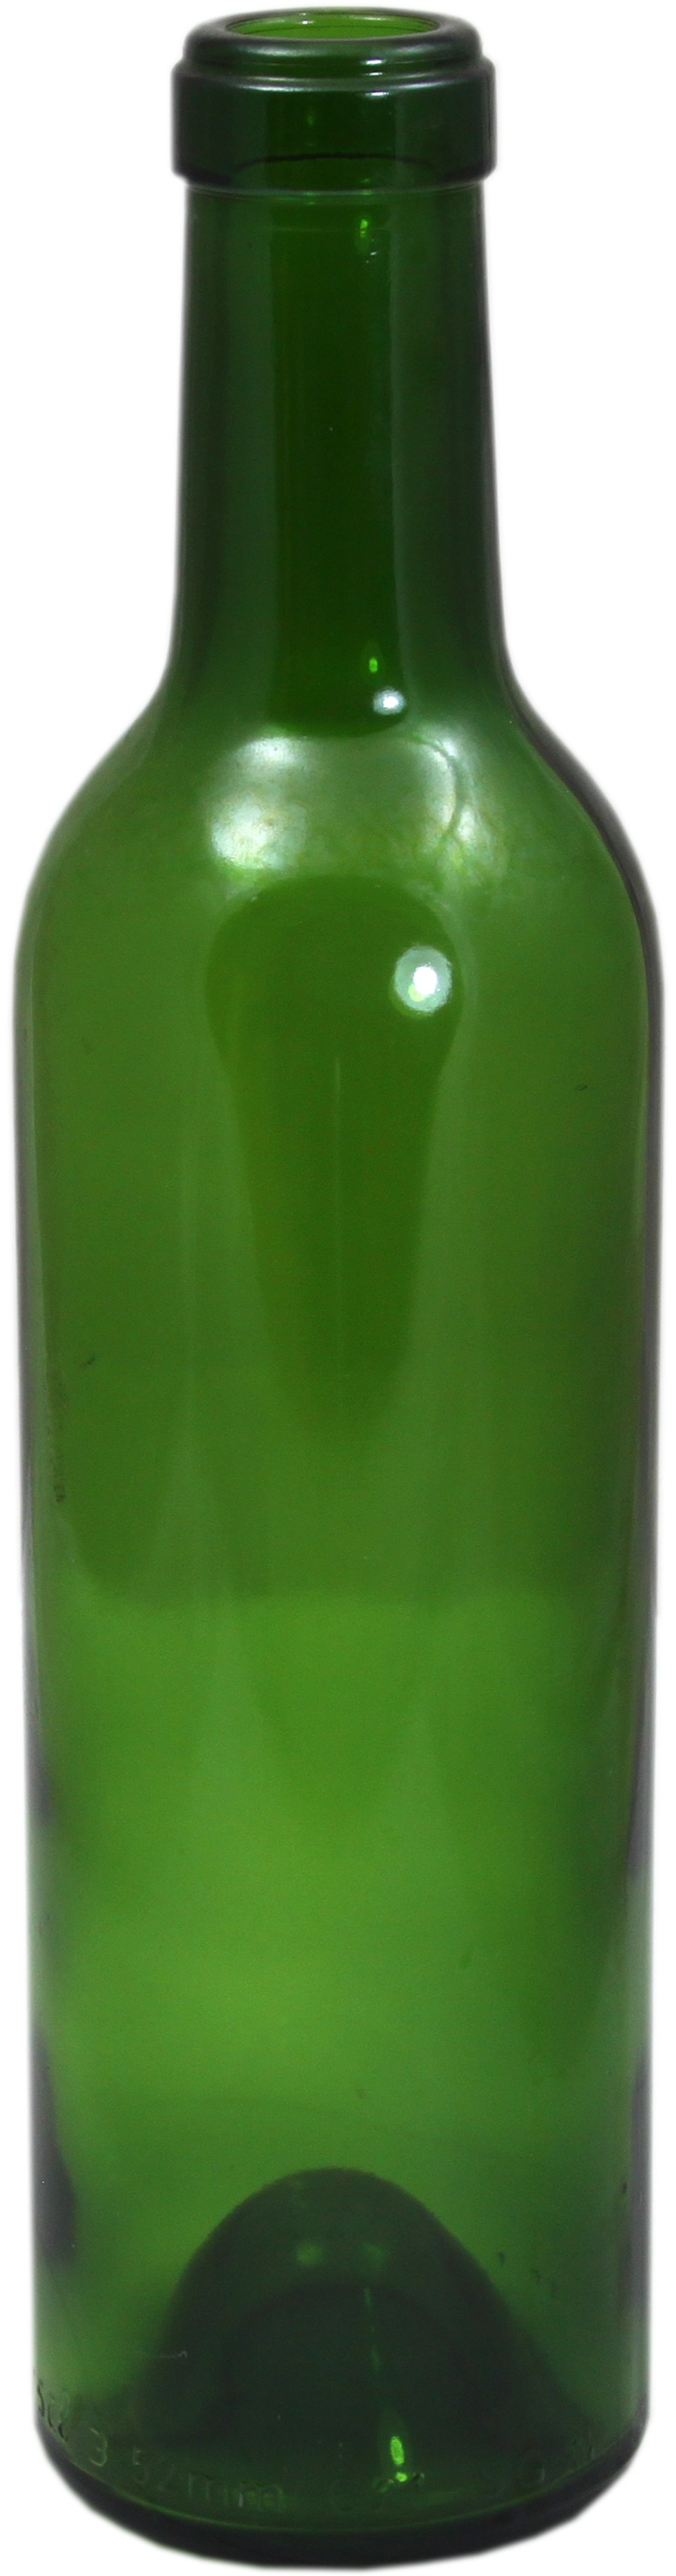 green 750ml wine bottle